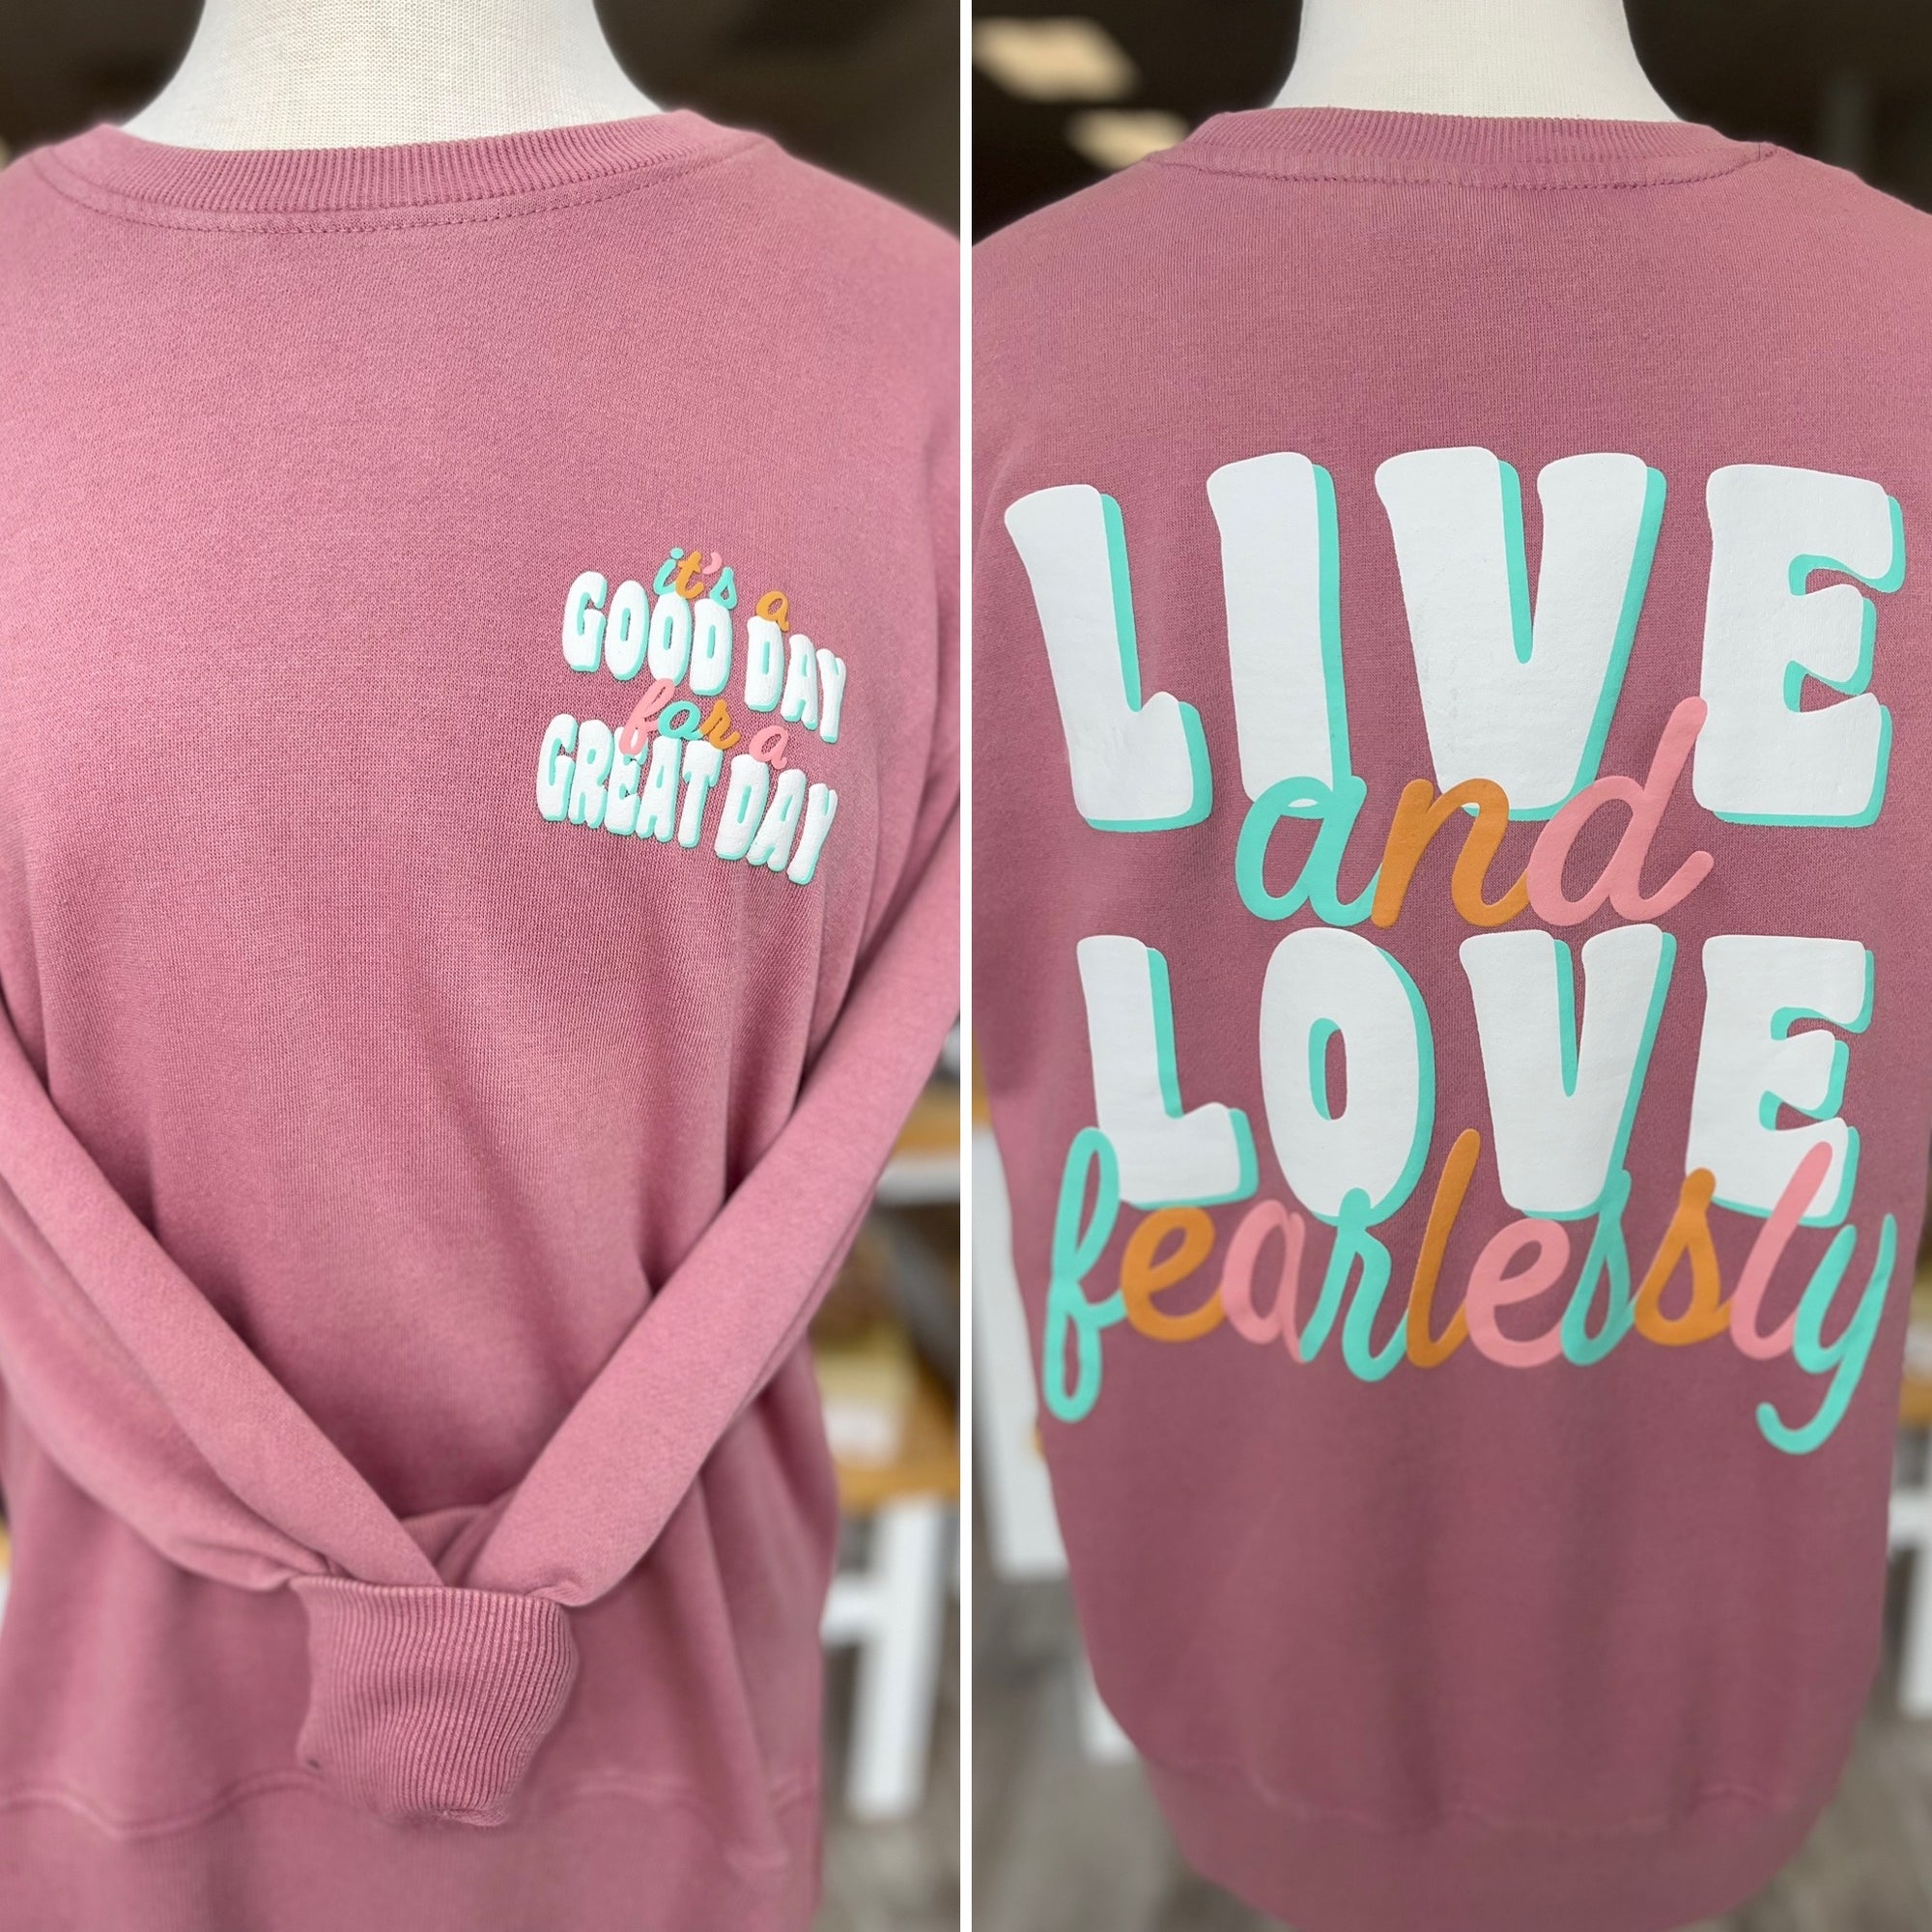 Live & Love Fearlessly - Sweatshirt